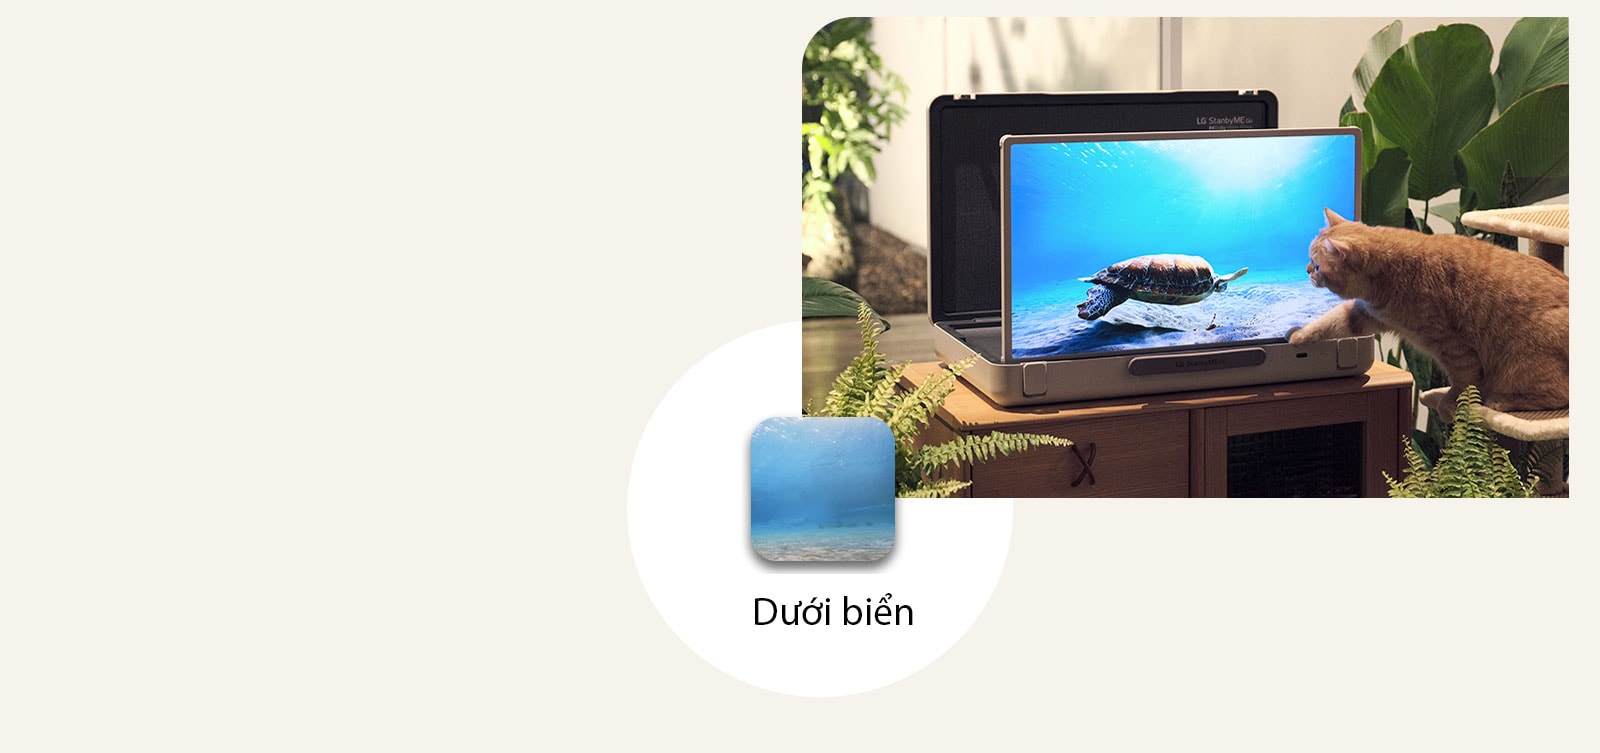 LG StanbyME Go được đặt trong 1 khu vườn và màn hình hiển thị dưới biển.  Trước màn hình, một con mèo đang ngồi trên ghế đẩu, cố gắng bắt một con rùa trên màn hình. 